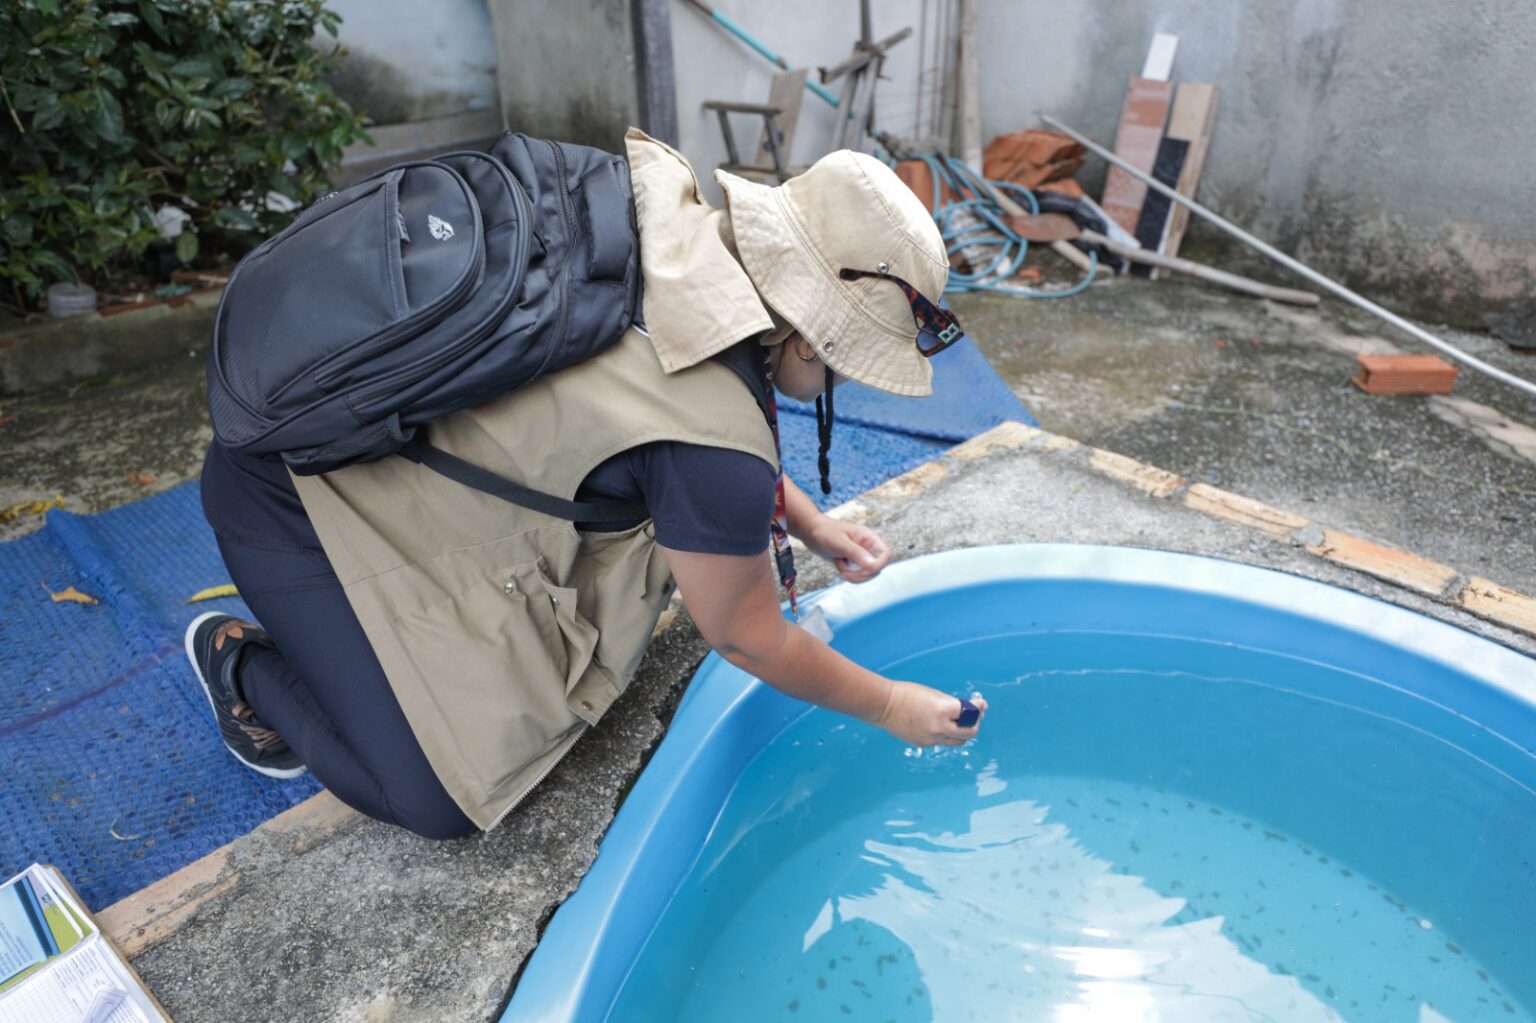 Justiça do DF ajuda no combate à dengue permitindo o acesso a imóveis abandonados sem autorização